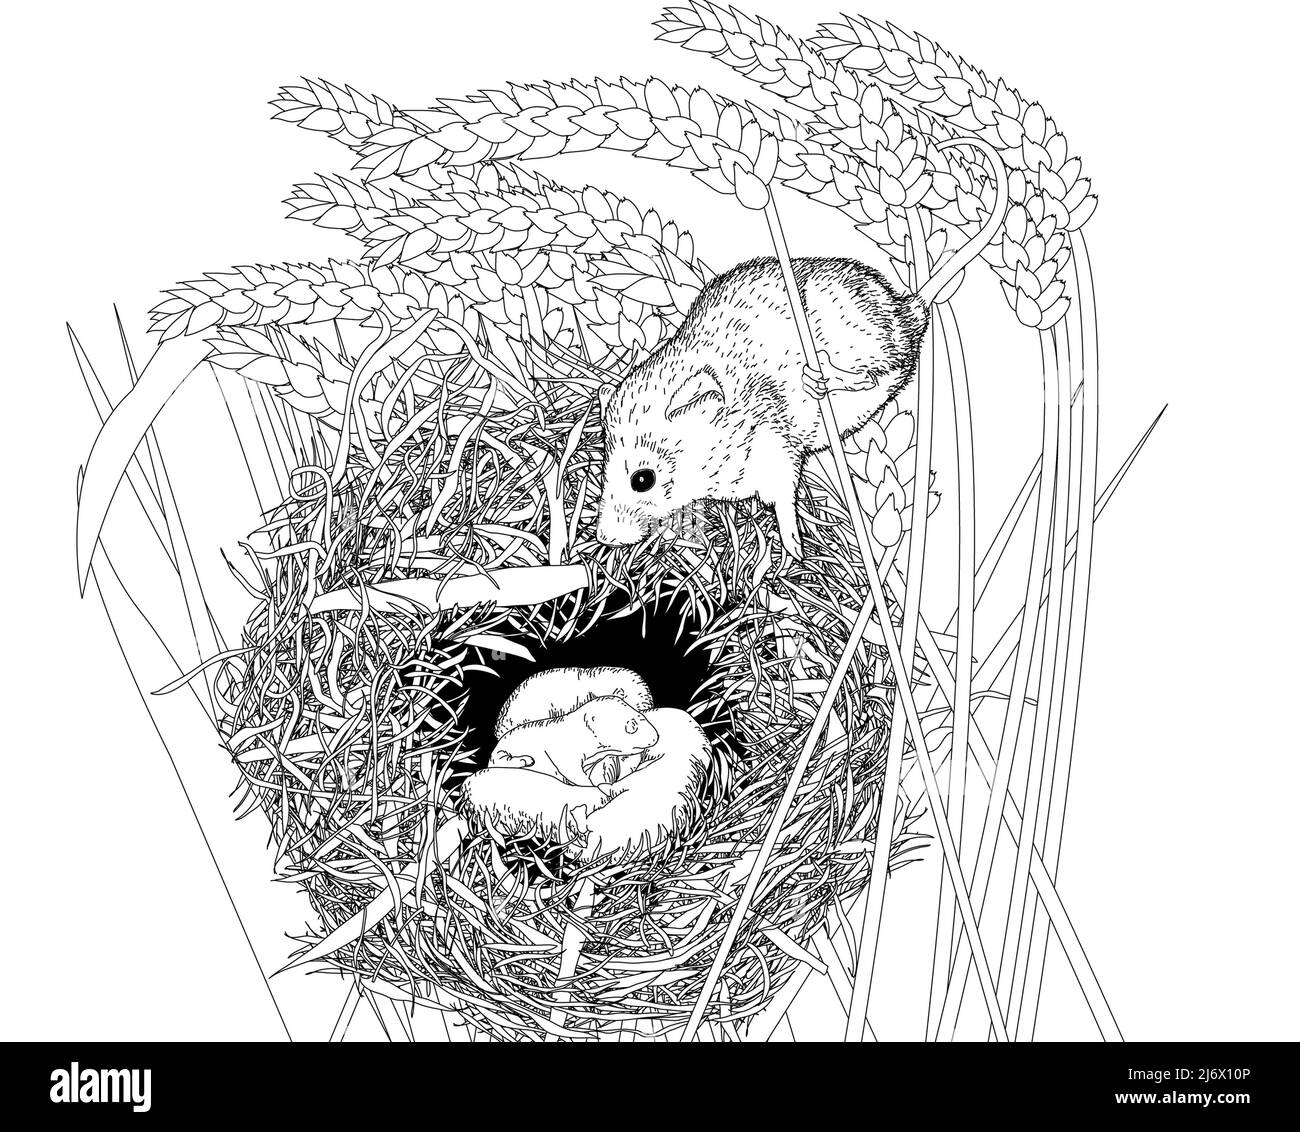 Illustration en noir et blanc d'une souris européenne en bois (Apodemus sylvaticus)/ souris de champ sur son nid. Livre d'art, éducation, feuille de travail d'activité. Banque D'Images